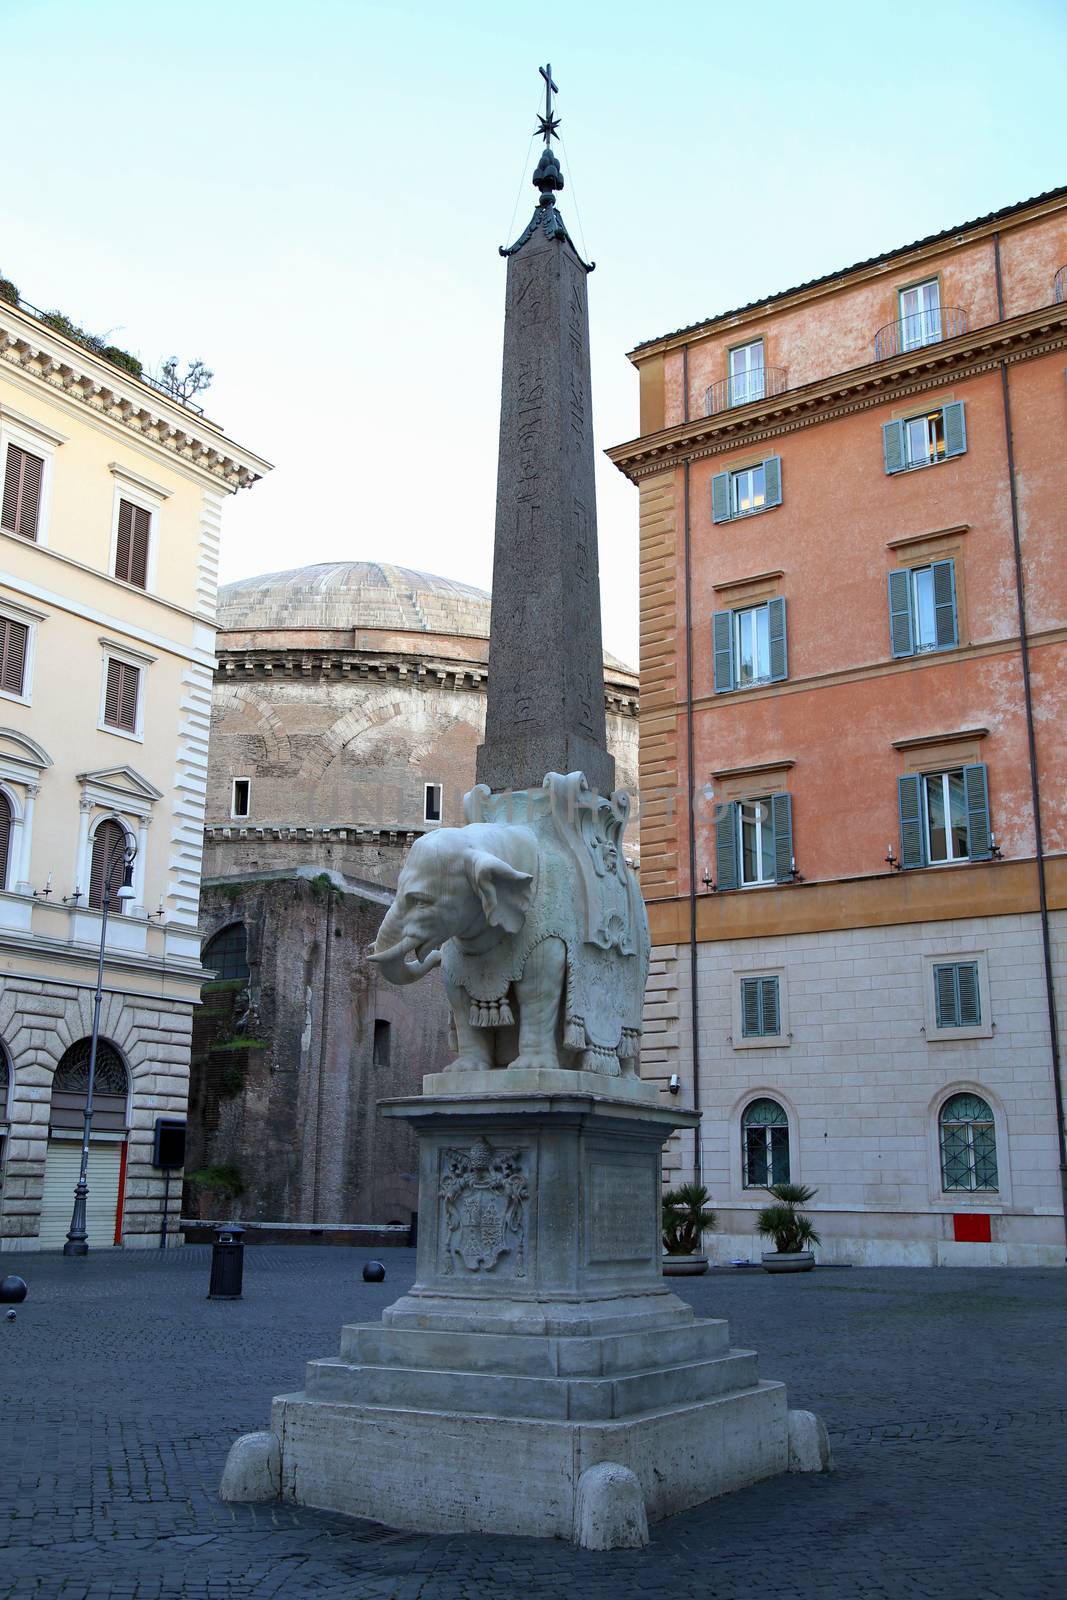 Monument of Elephant by Bernini on Piazza della Minerva in Rome, by vladacanon